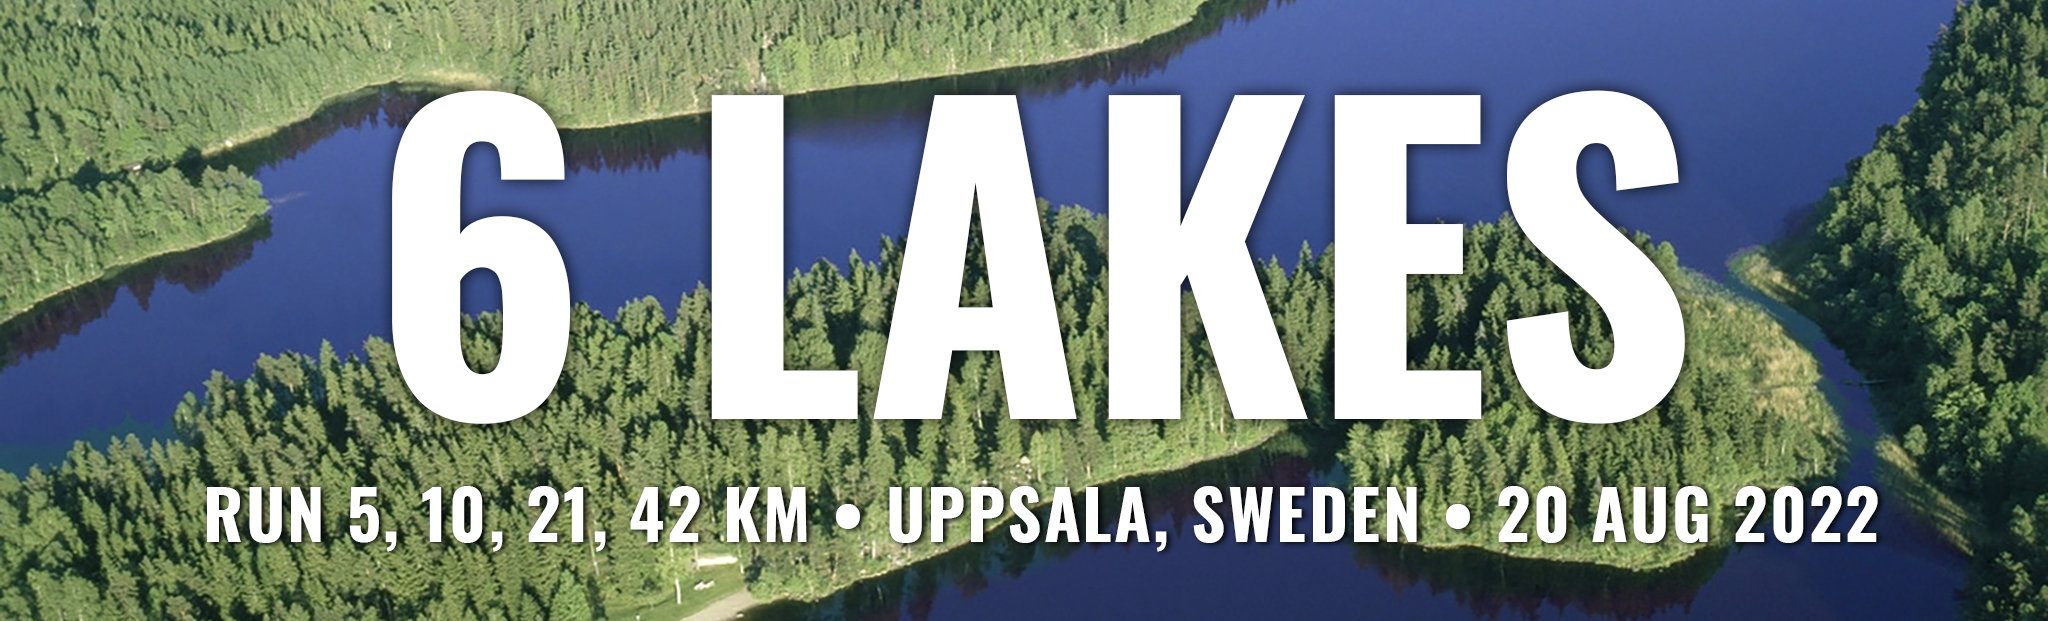 6 lakes marathon in Sweden